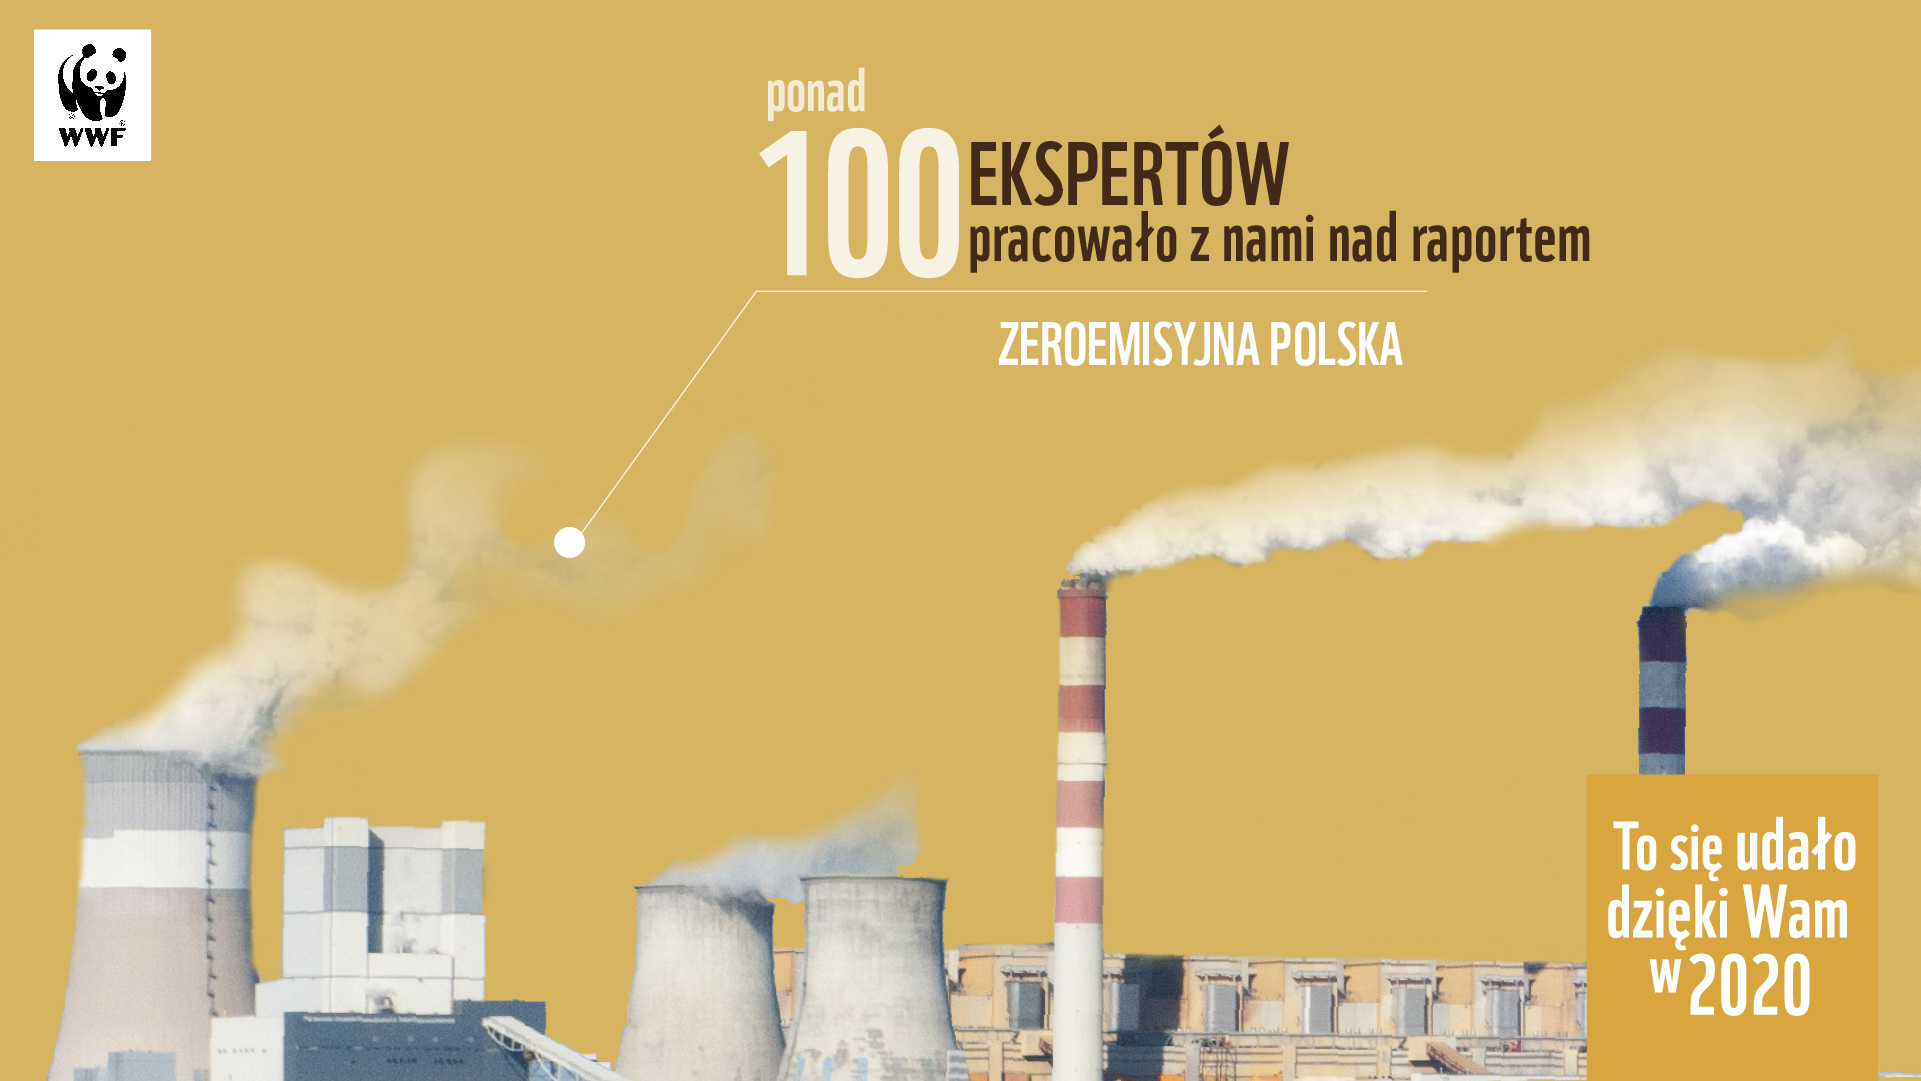 Ponad 100 ekspertów pracowało z nami nad raportem "Zeroemisyjna Polska"